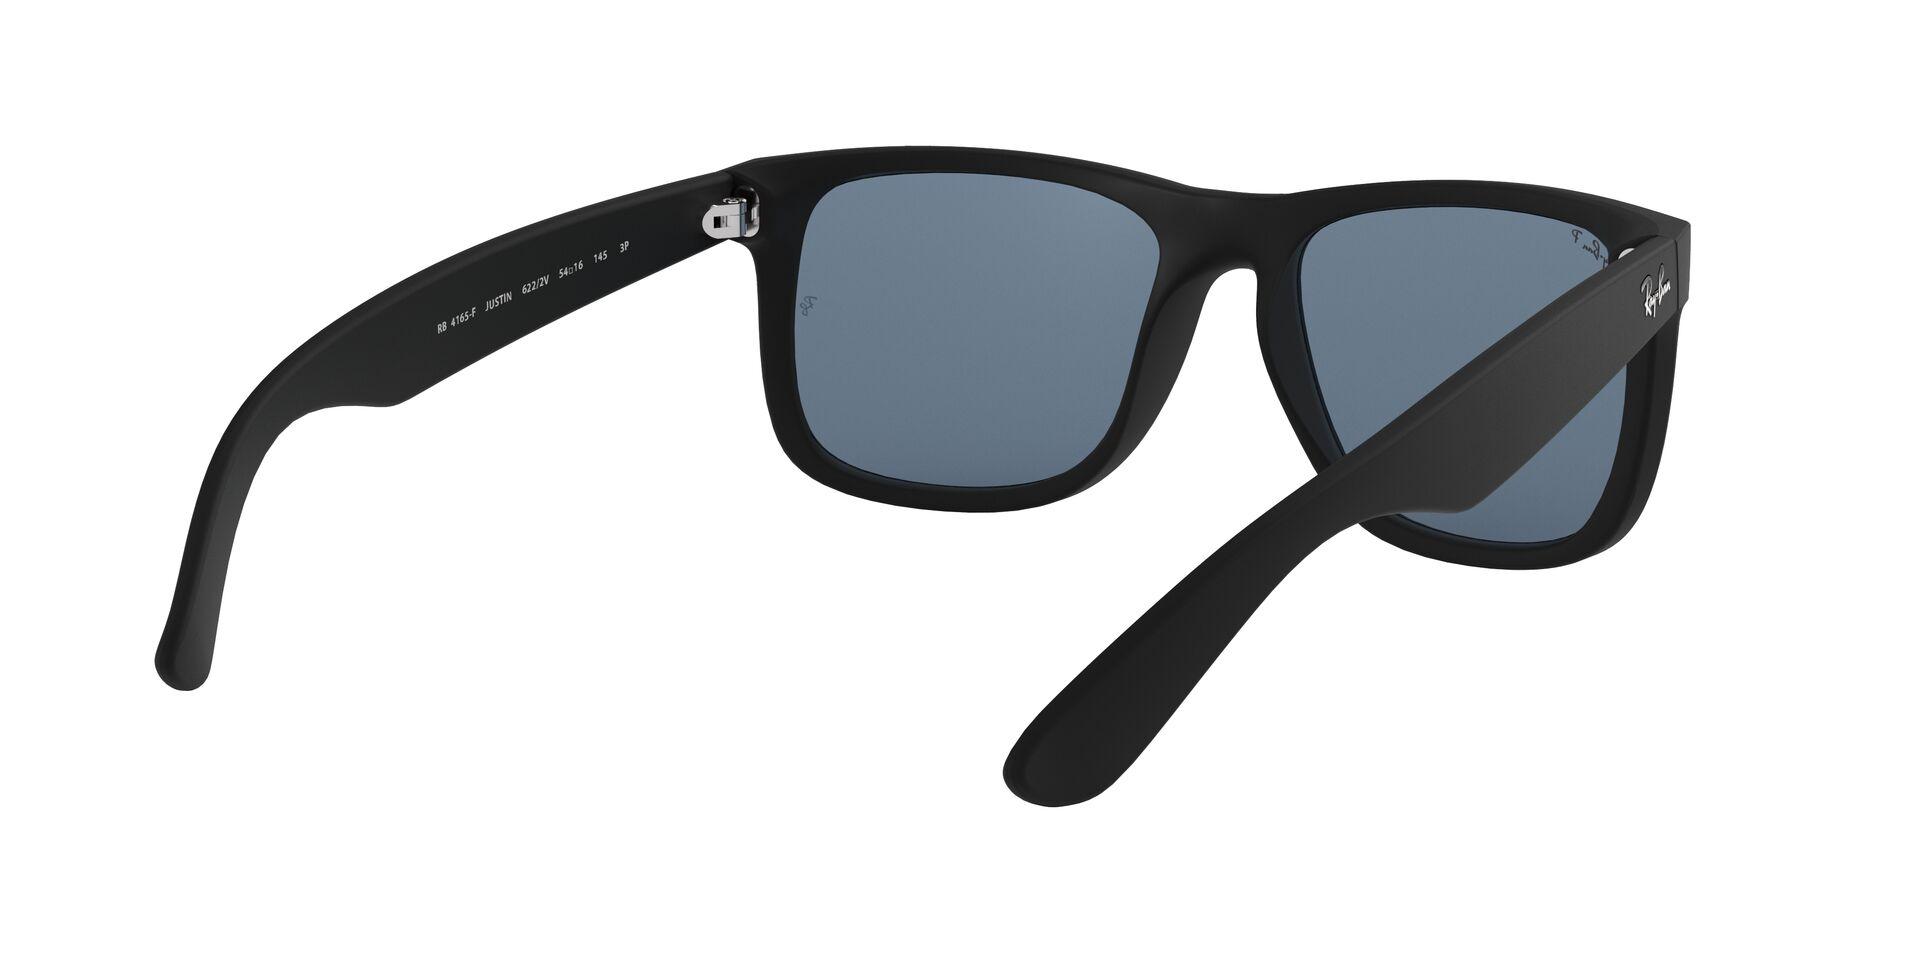 Mắt Kính Ray-Ban Justin - RB4165F 622/2V -Sunglasses